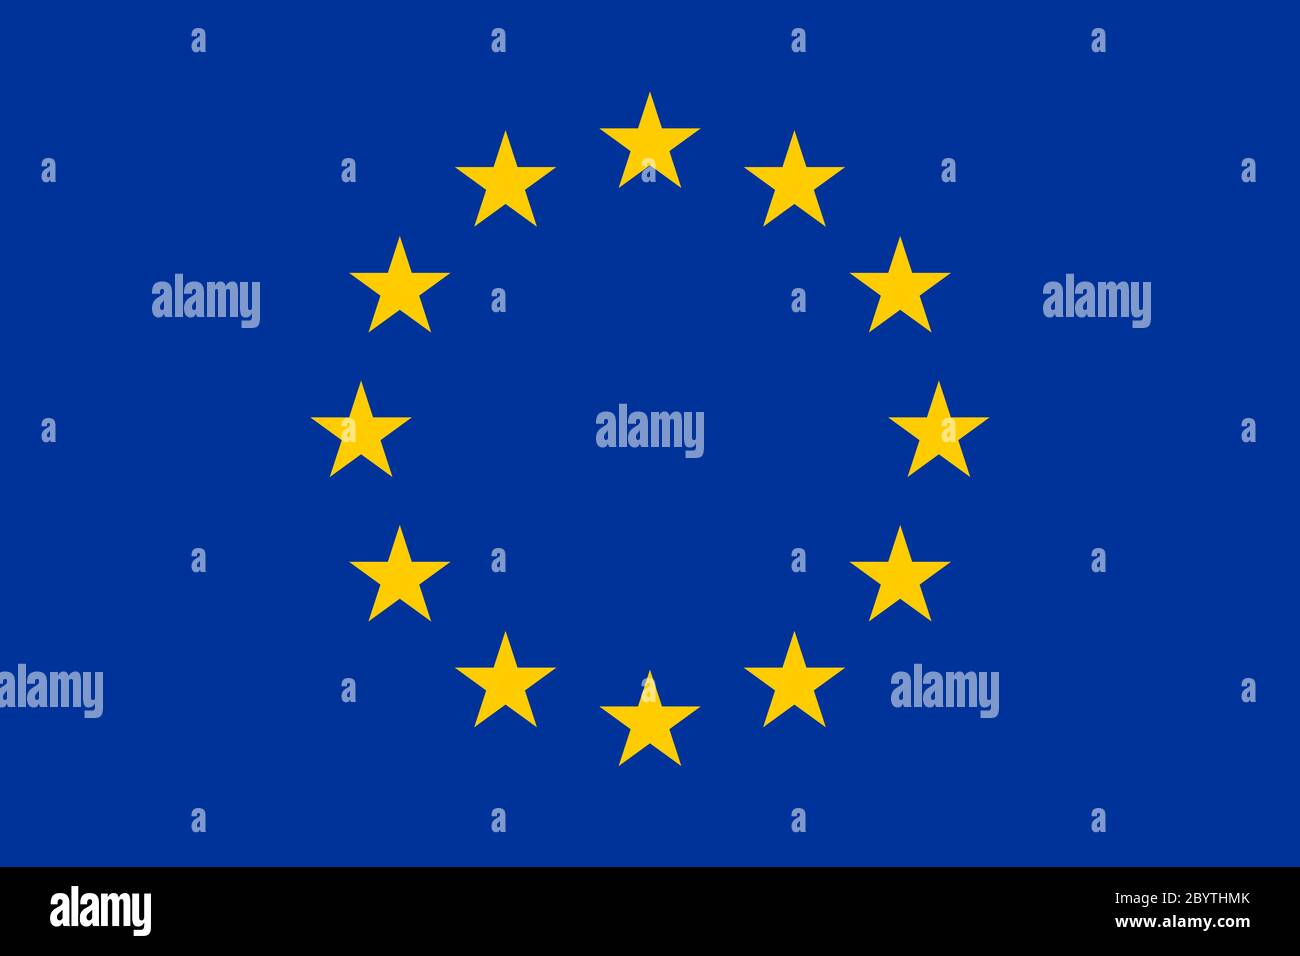 Drapeau de l'Union européenne, UE. Douze étoiles dorées sur fond bleu. Taille et couleurs officielles. Illustration de Vecteur